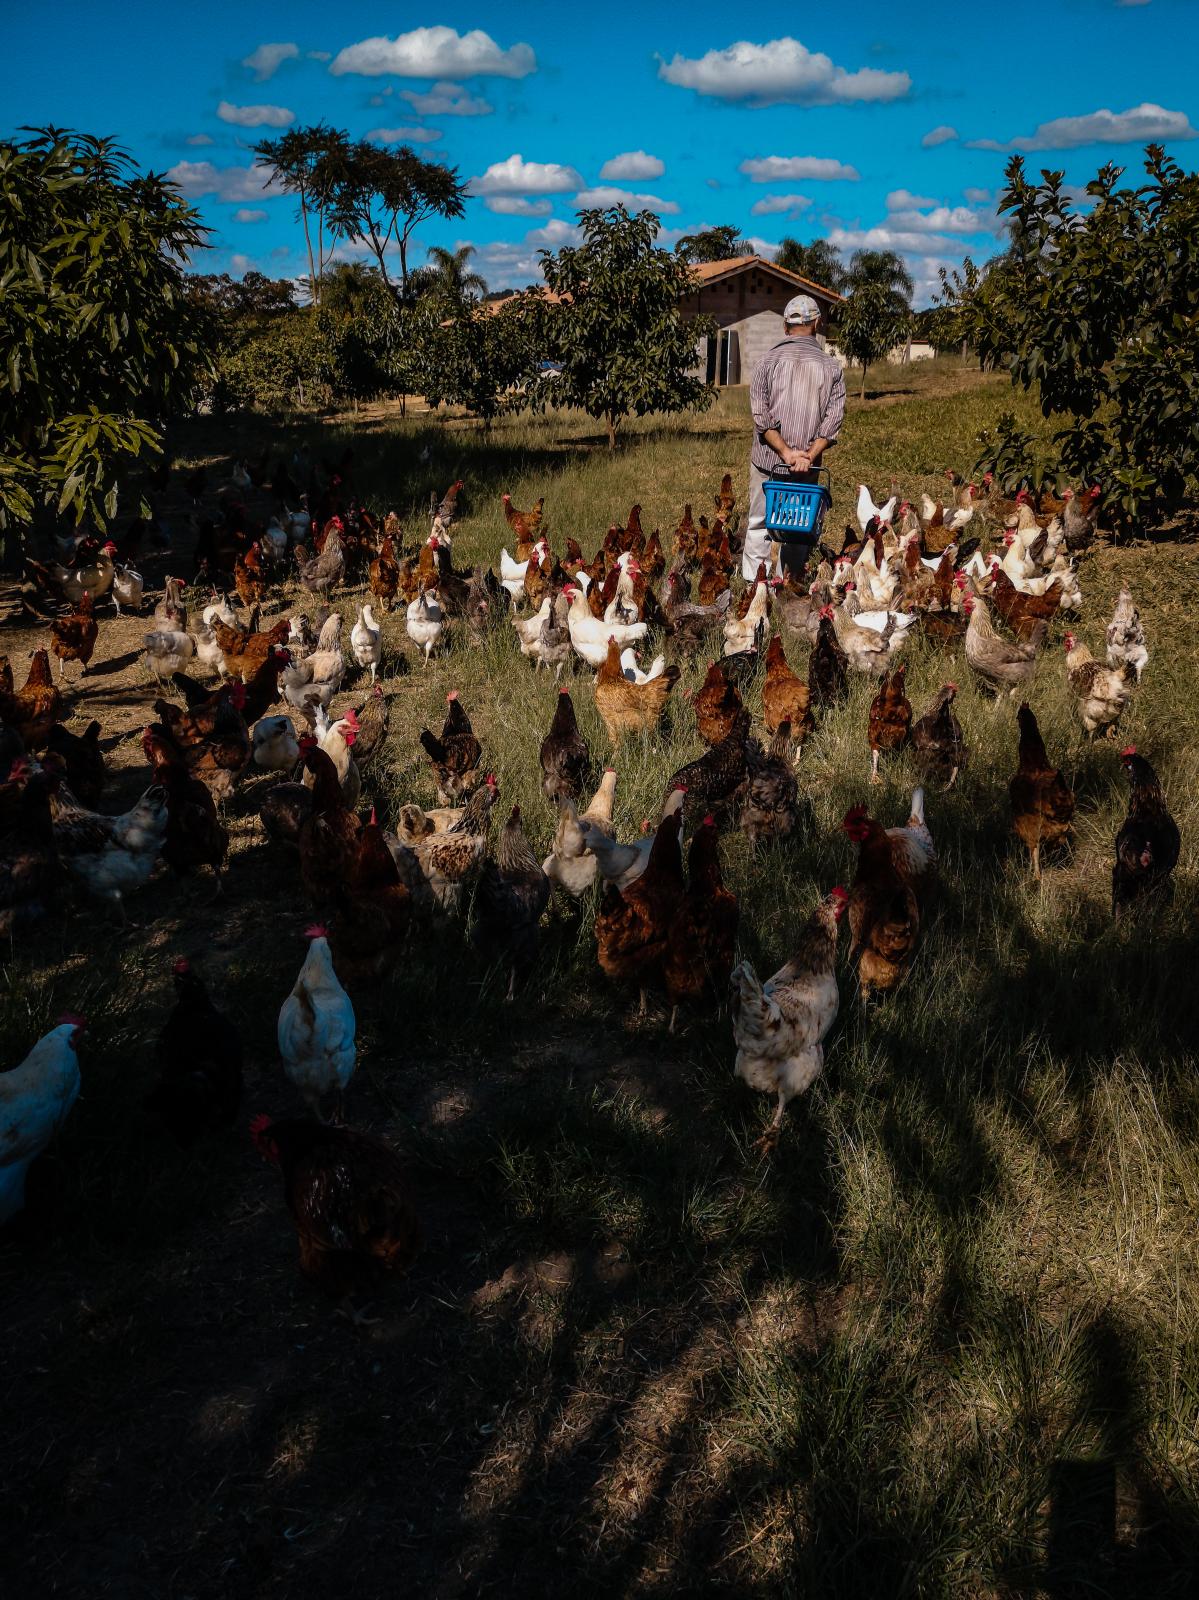 Life of a chicken farm during the Covid-19 pandemic in Brazil - As galinhas seguem Marco, um produtor brasileiro de ovos...